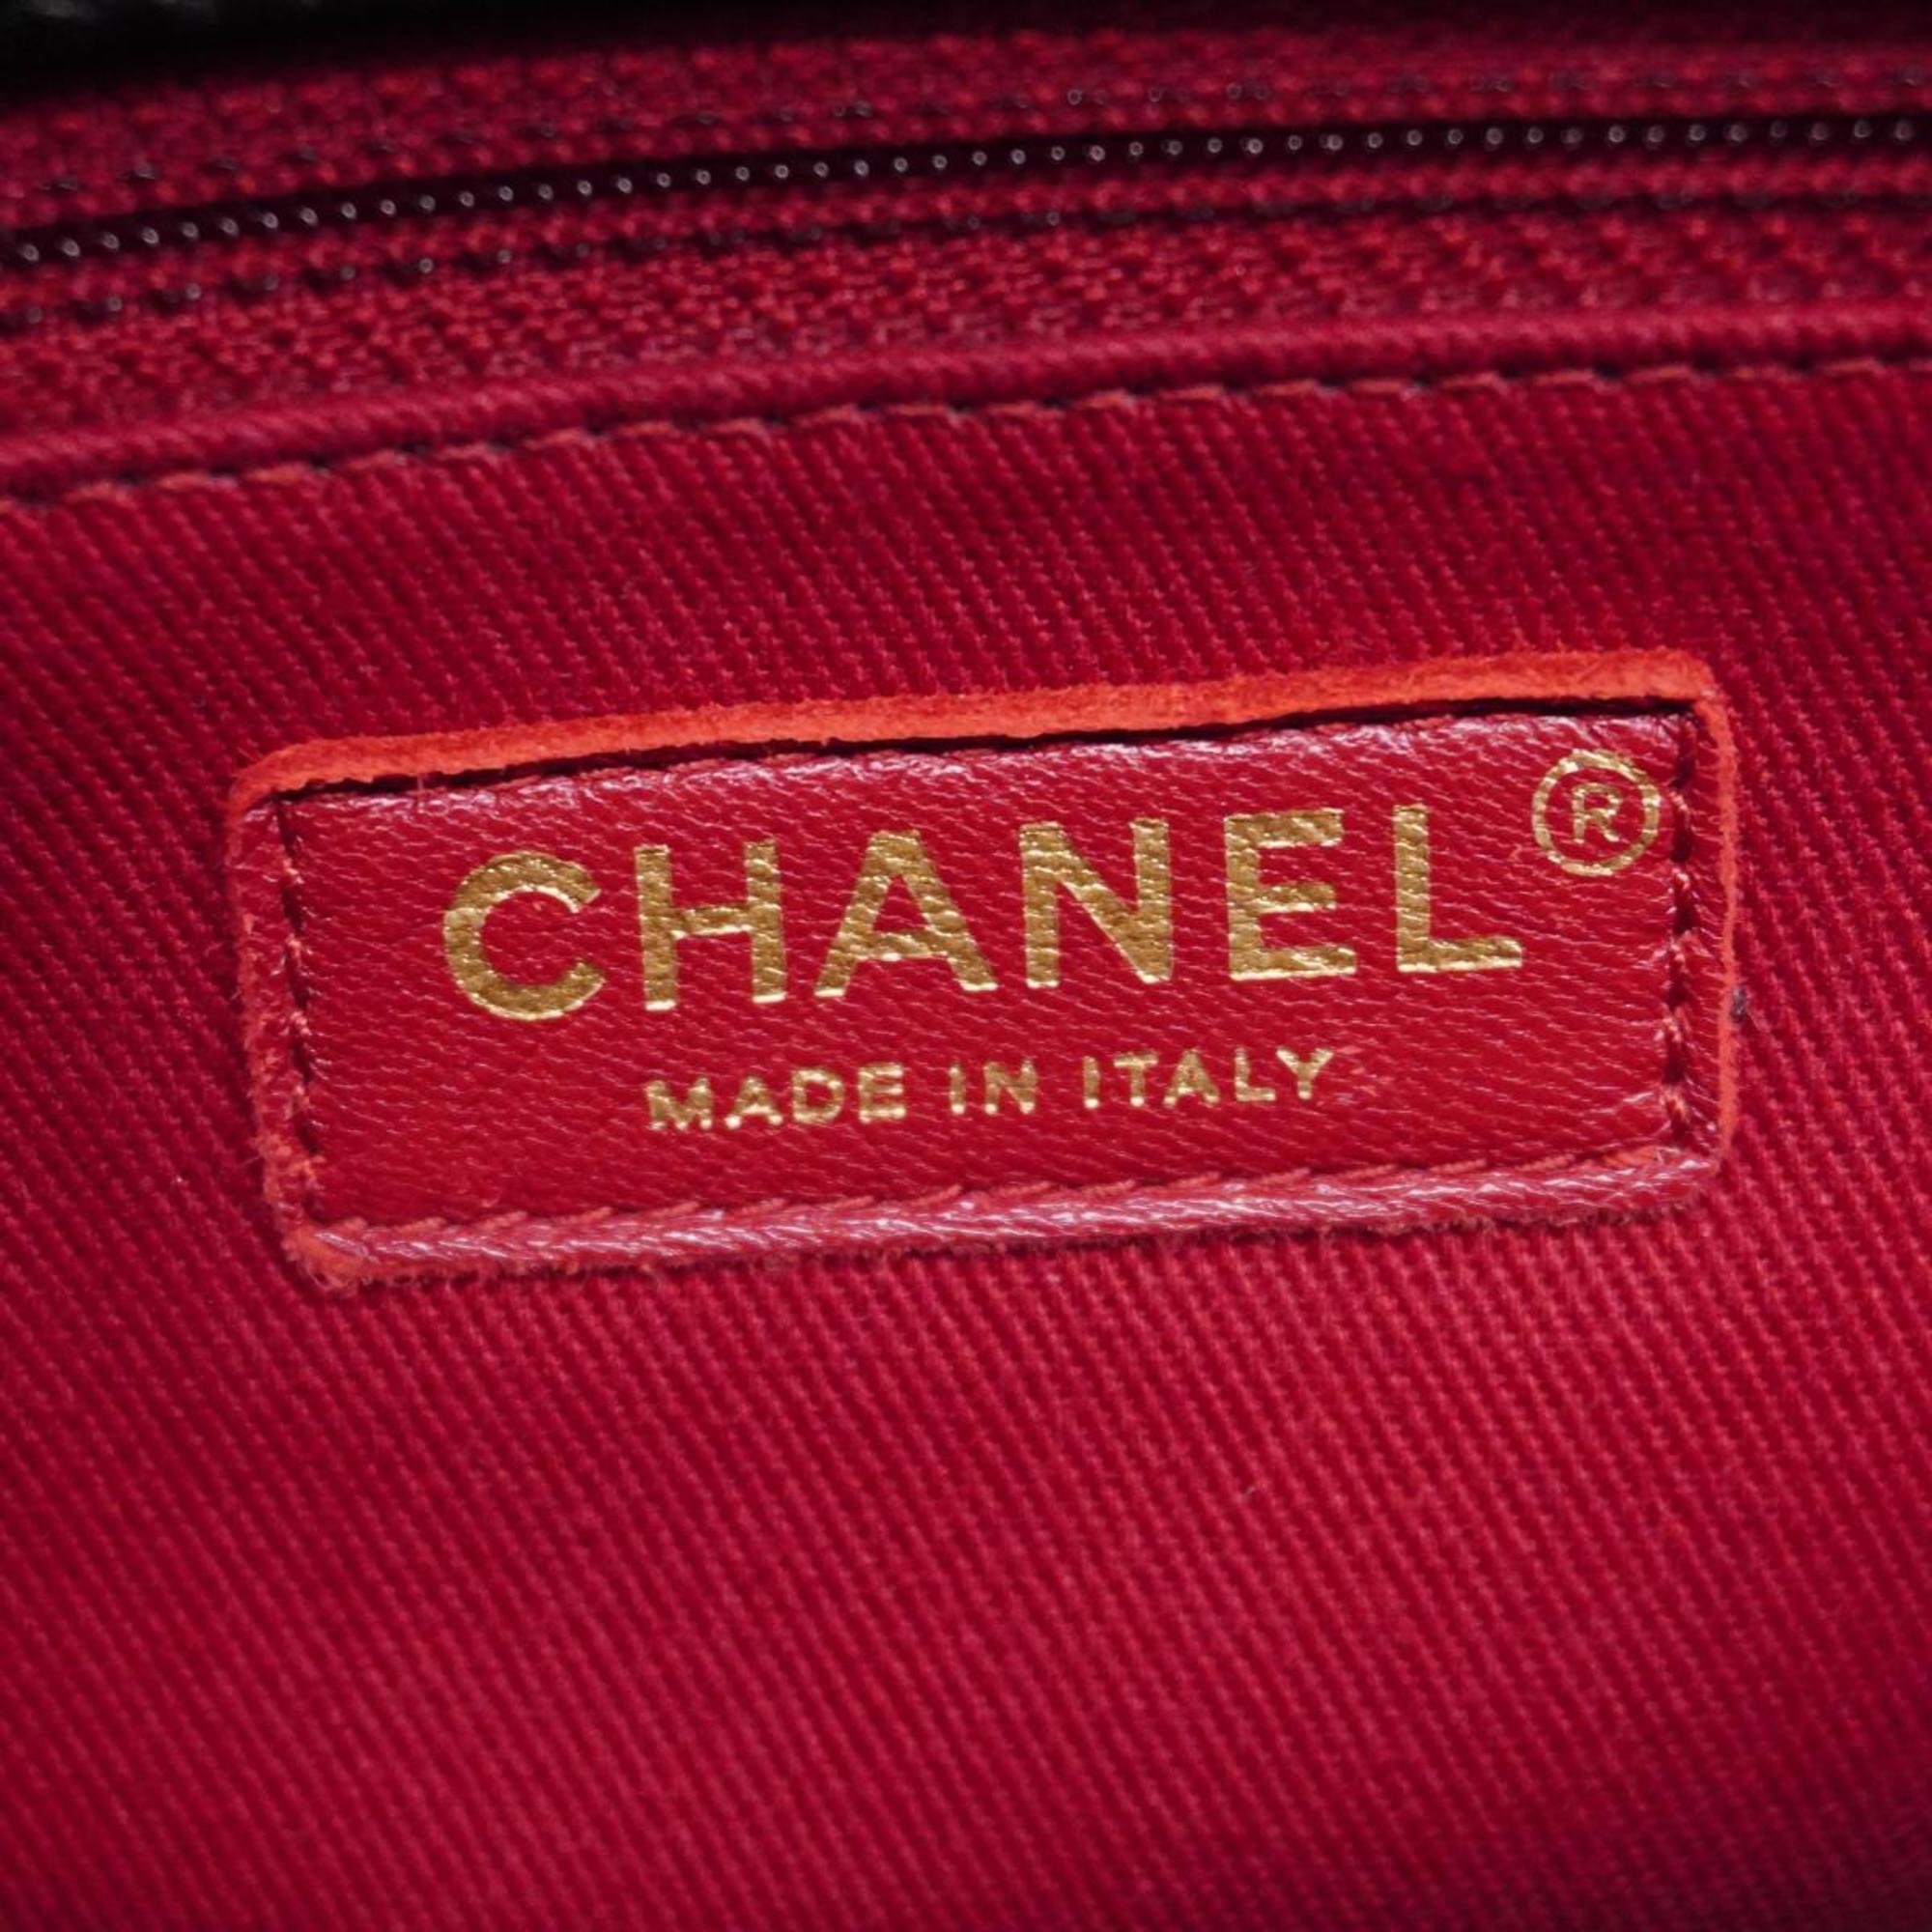 シャネル(Chanel) シャネル ハンドバッグ Vステッチ チェーンショルダー レザー ブラック   レディース